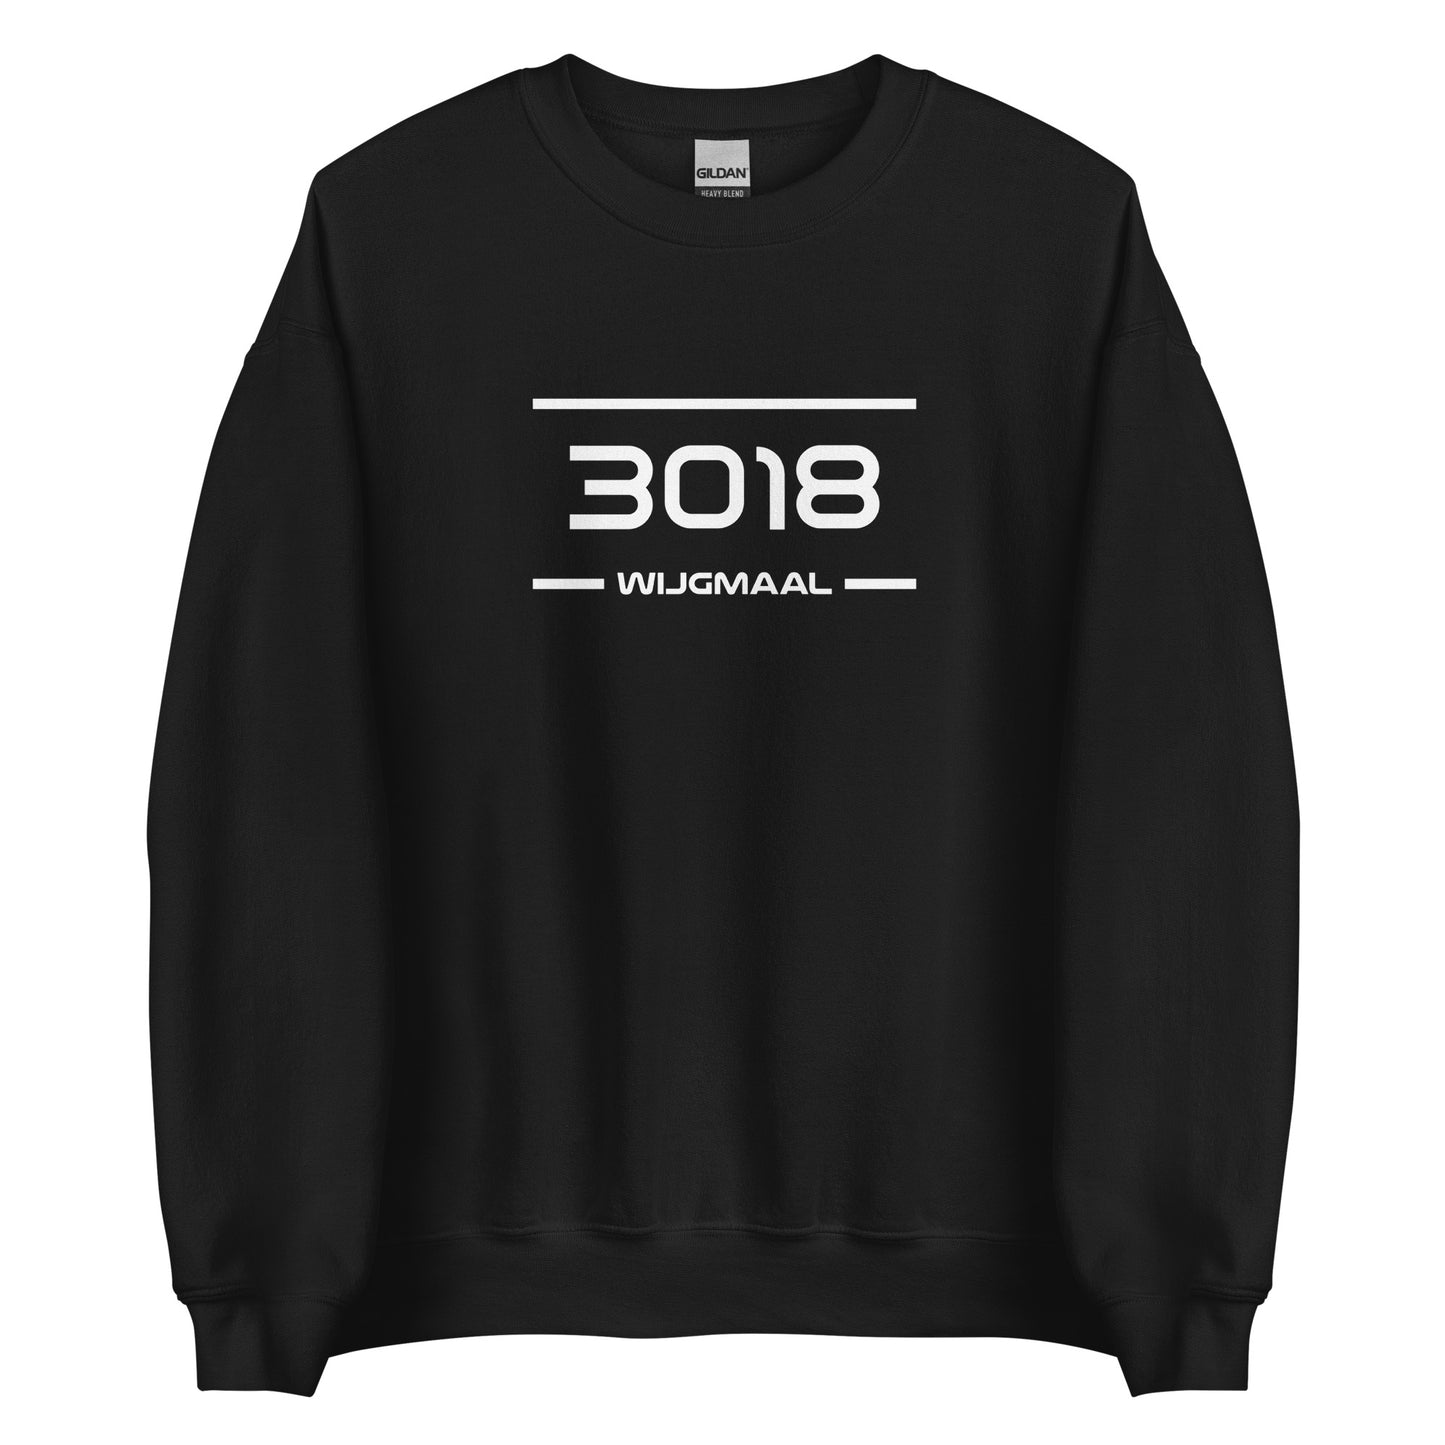 Sweater - 3018 - Wijgmaal (M/V)